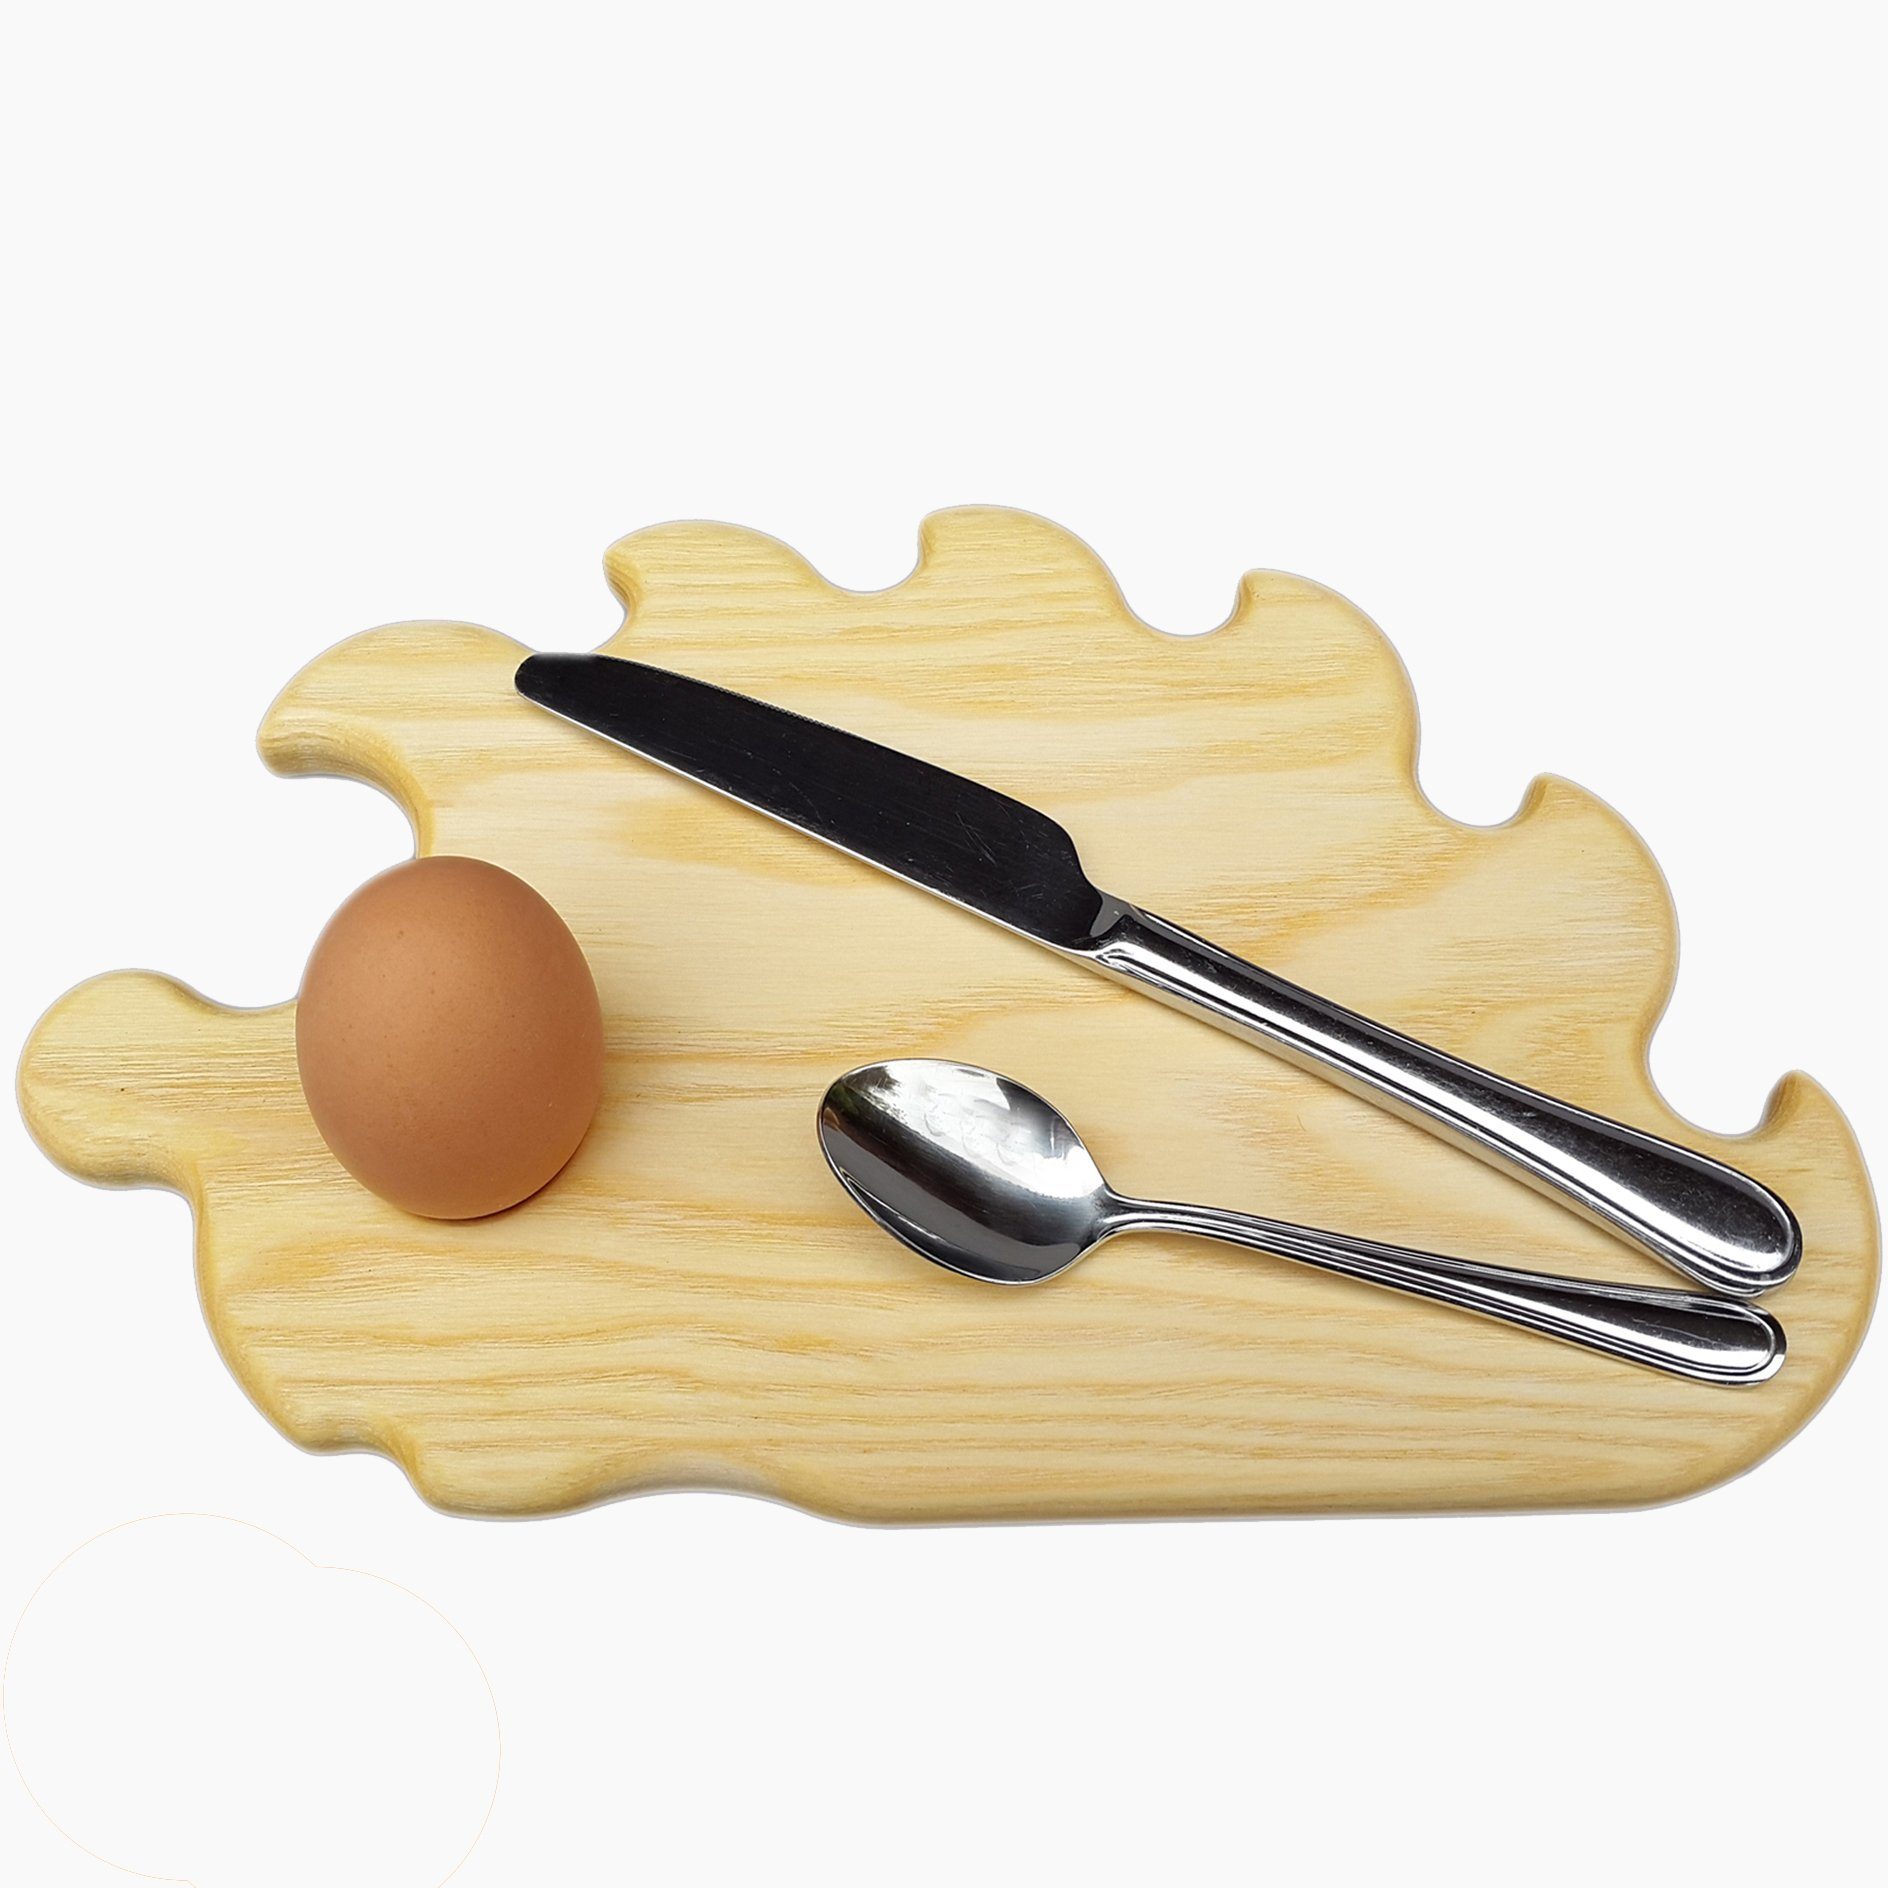 Spielzeuge Eschenholz, Eierbecher,Made in klein, Germany Igel Frühstücksbrett mit Frühstücksbrettchen Madera